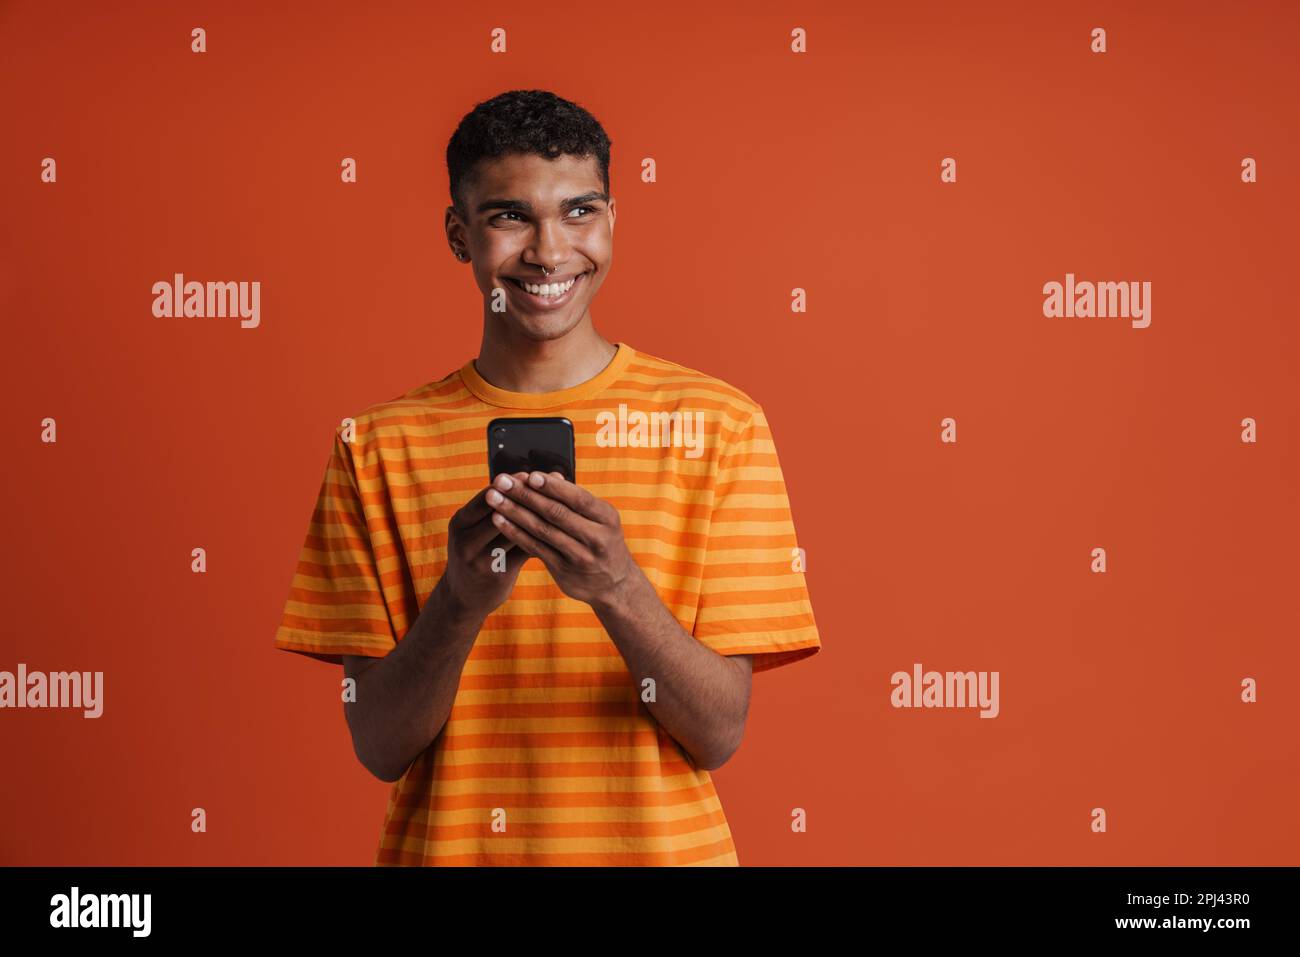 Ein junger, gut aussehender afrikaner mit Piercings, der sein Handy hielt und zur Seite schaute, während er über einem isolierten orangefarbenen Hintergrund stand Stockfoto